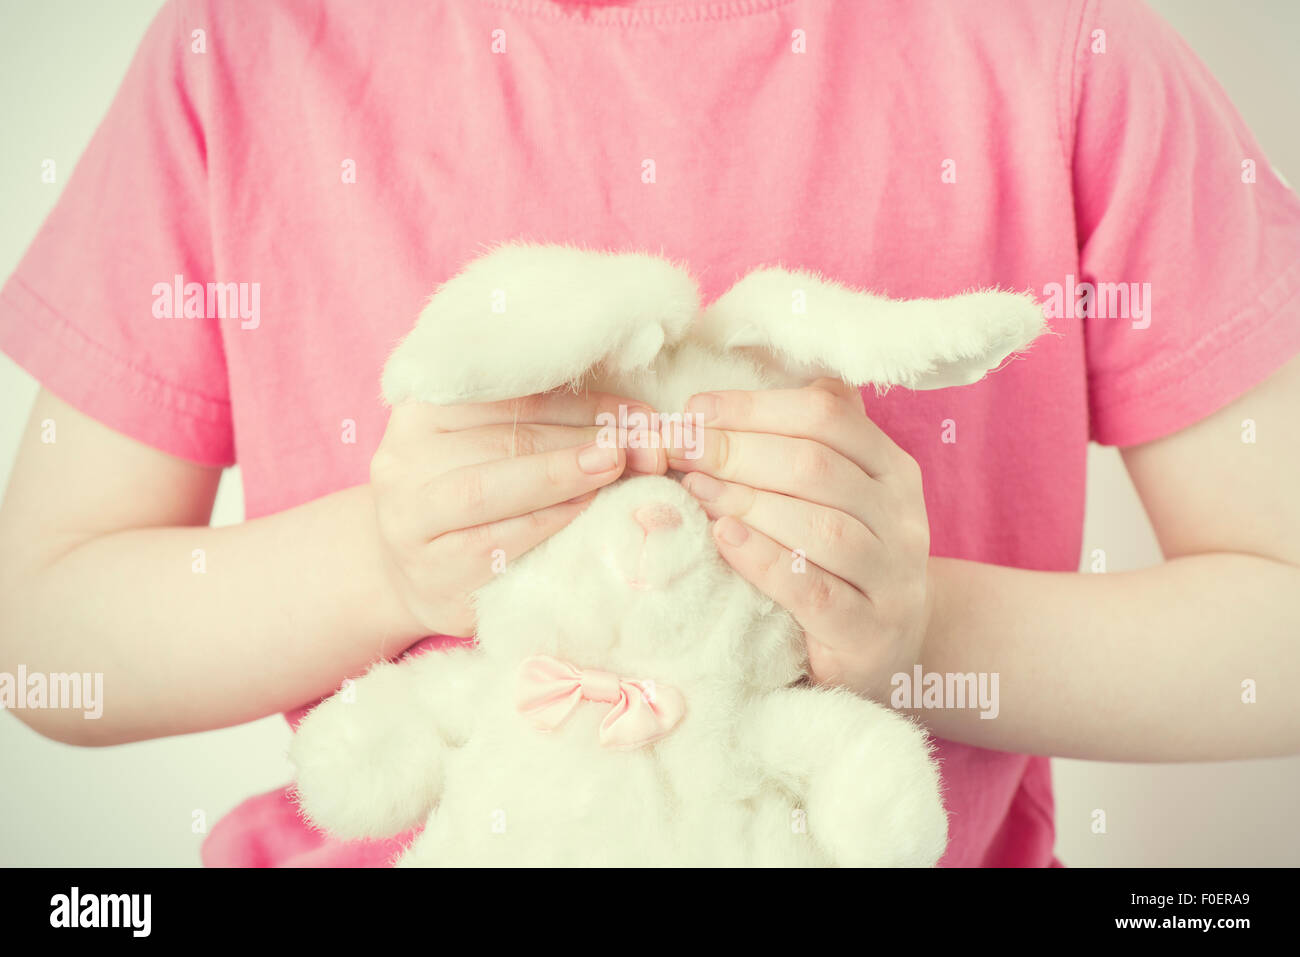 Bambina azienda giocattolo imbottito animale con le sue mani. È lei che copre gli occhi del giocattolo coniglio. Immagine concettuale dell'infanzia di insicurezza, di innocenza e vulnerabilità. Foto Stock